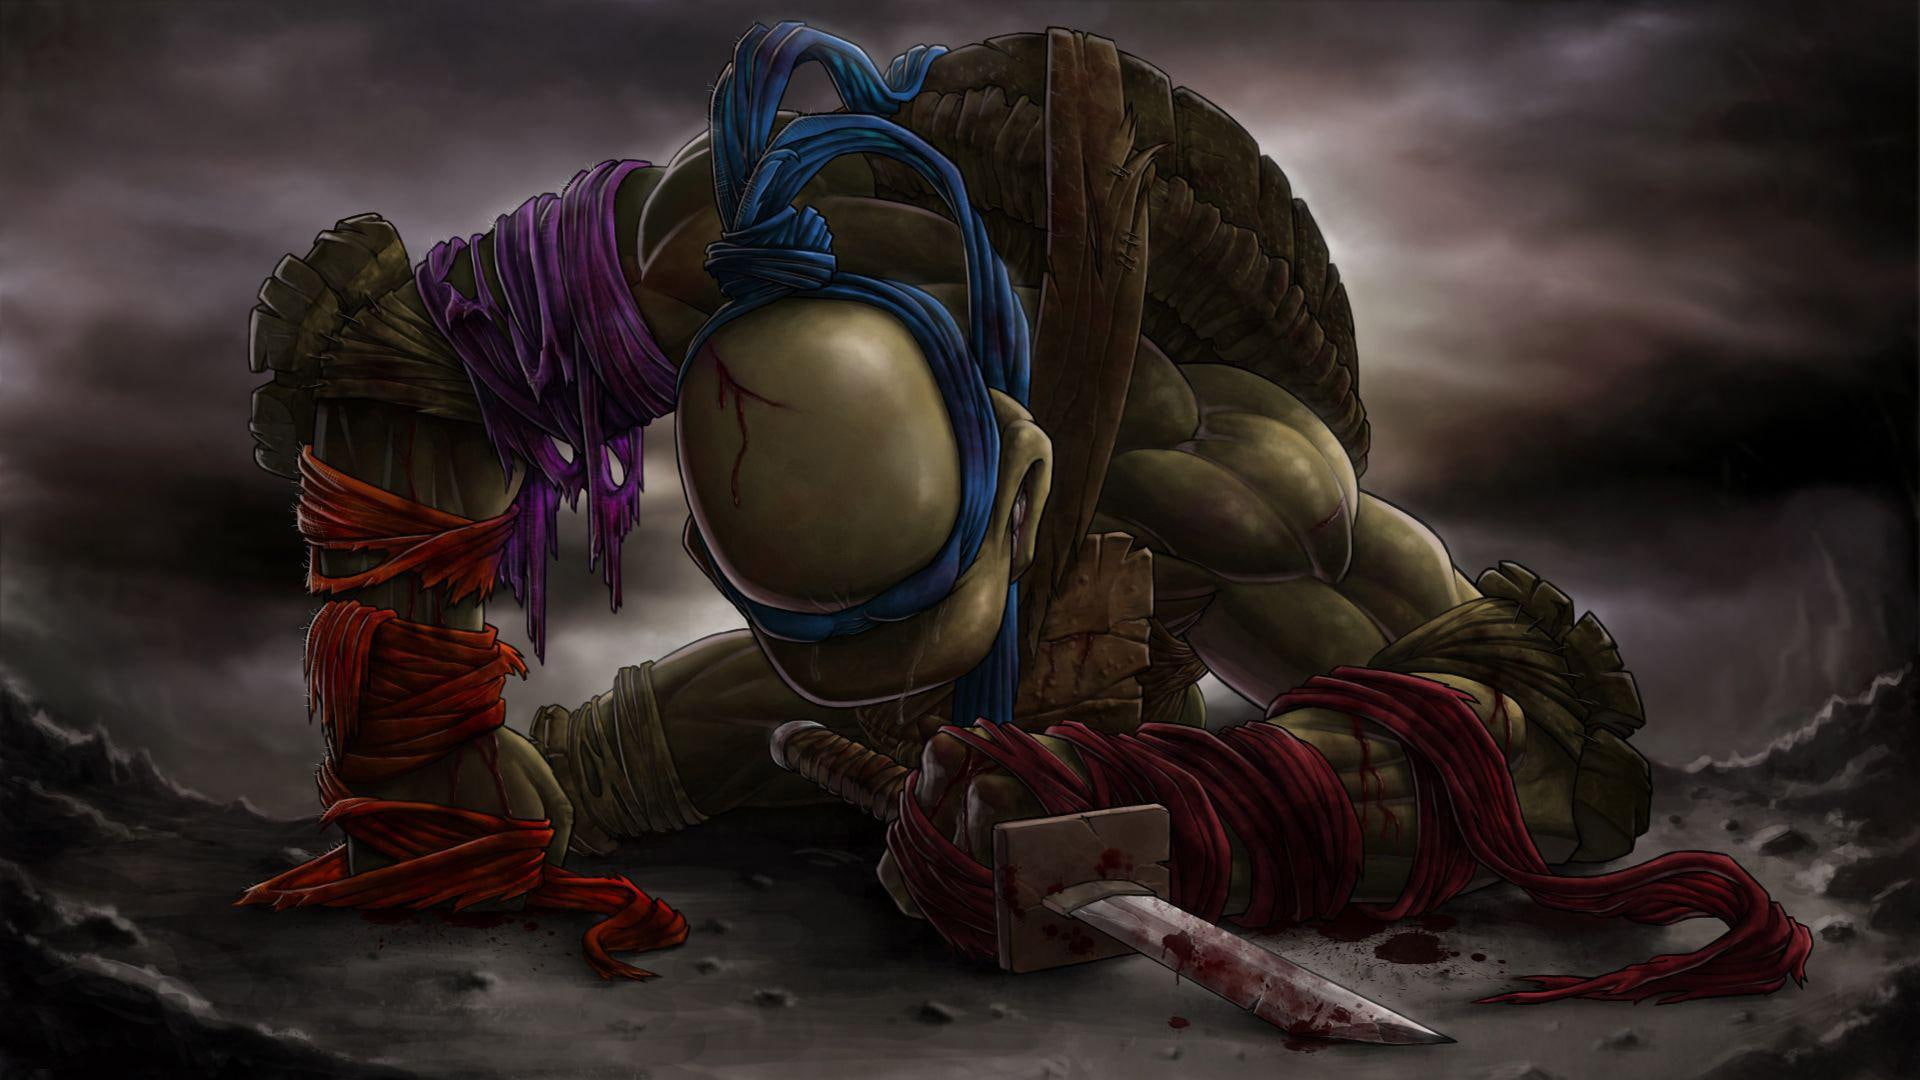 Leonardo - Teenage Mutant Ninja Turtles, leonardo illustration